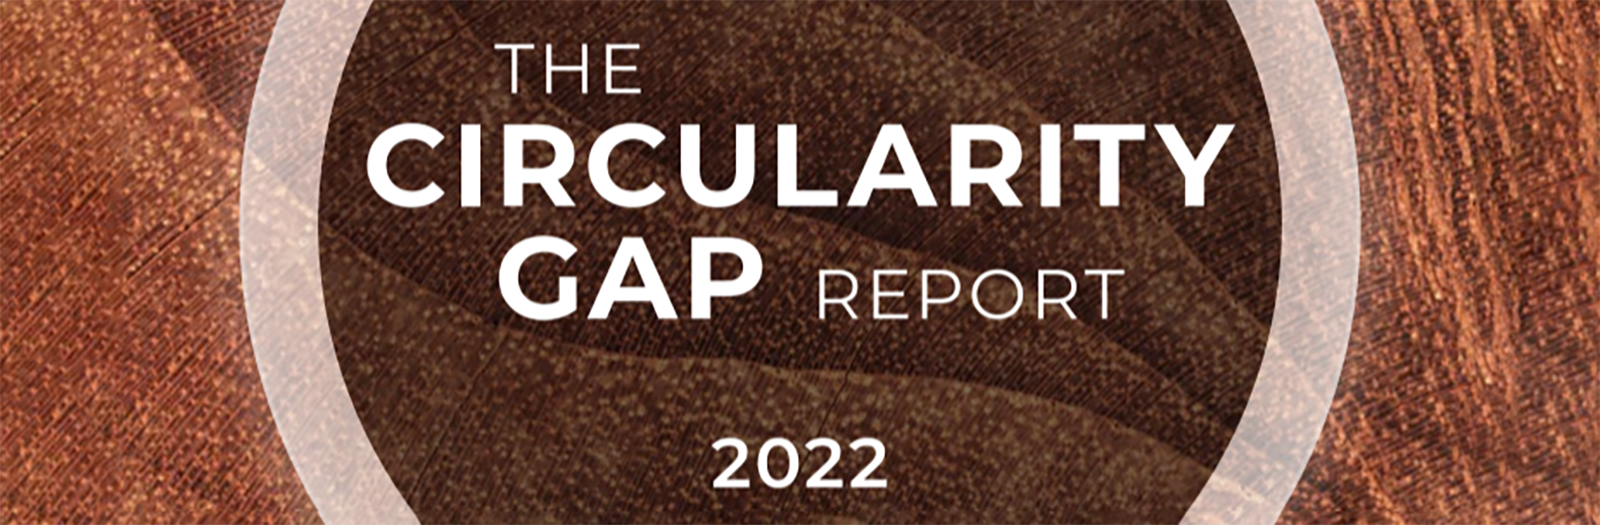 Circularity Gap Report cover